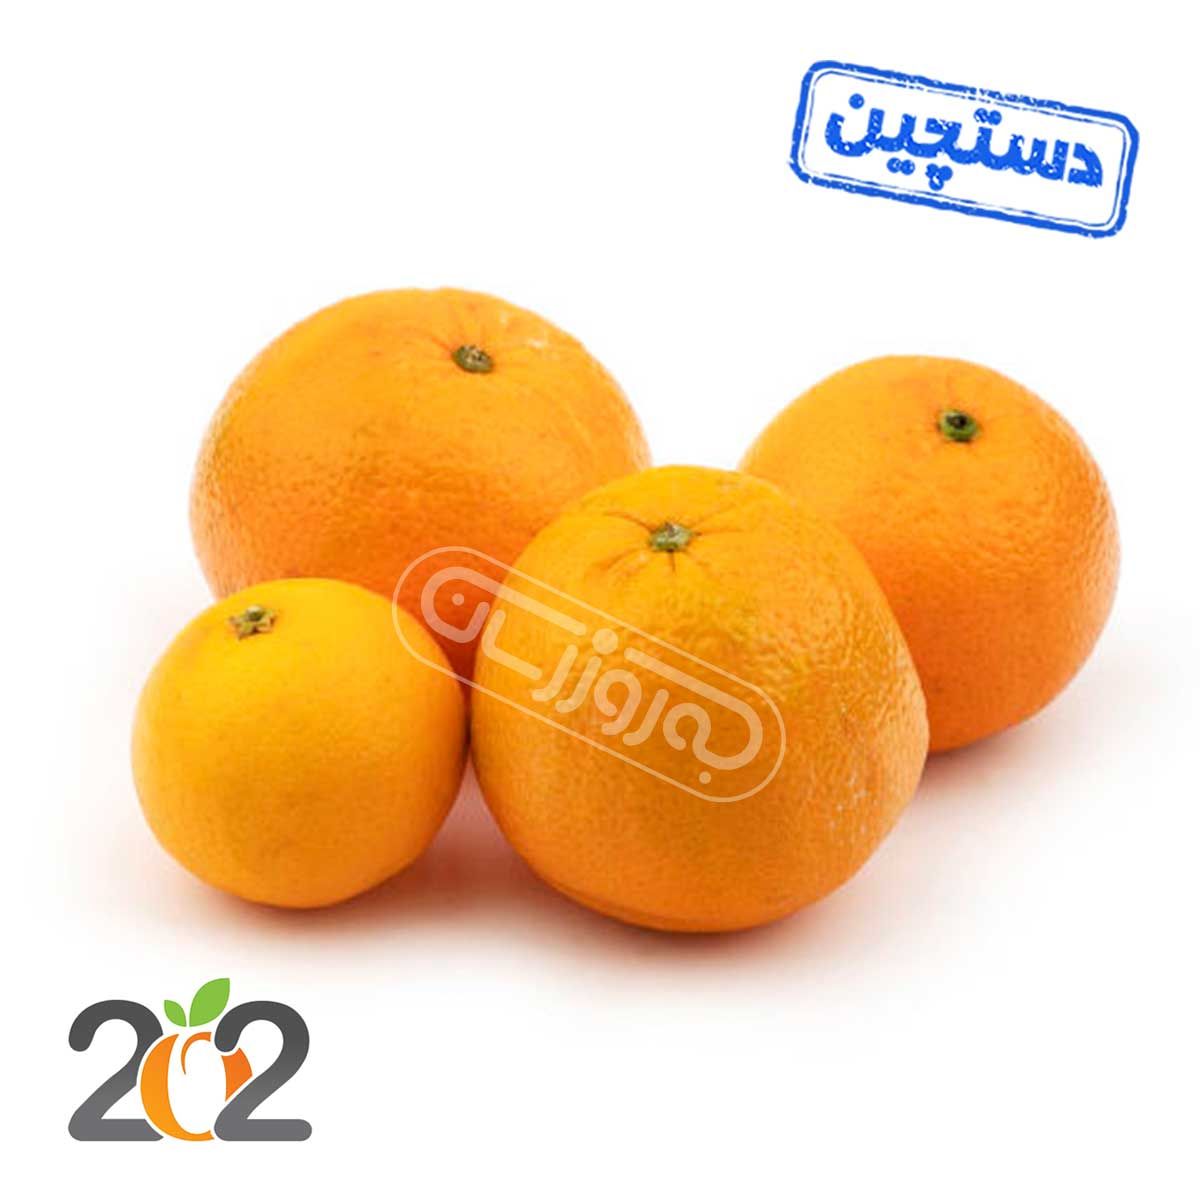 پرتقال تامسون شمال دستچین برند 202 ( قیمت ، خرید آنلاین ) - بازار آنلاینبه‌روز مارت